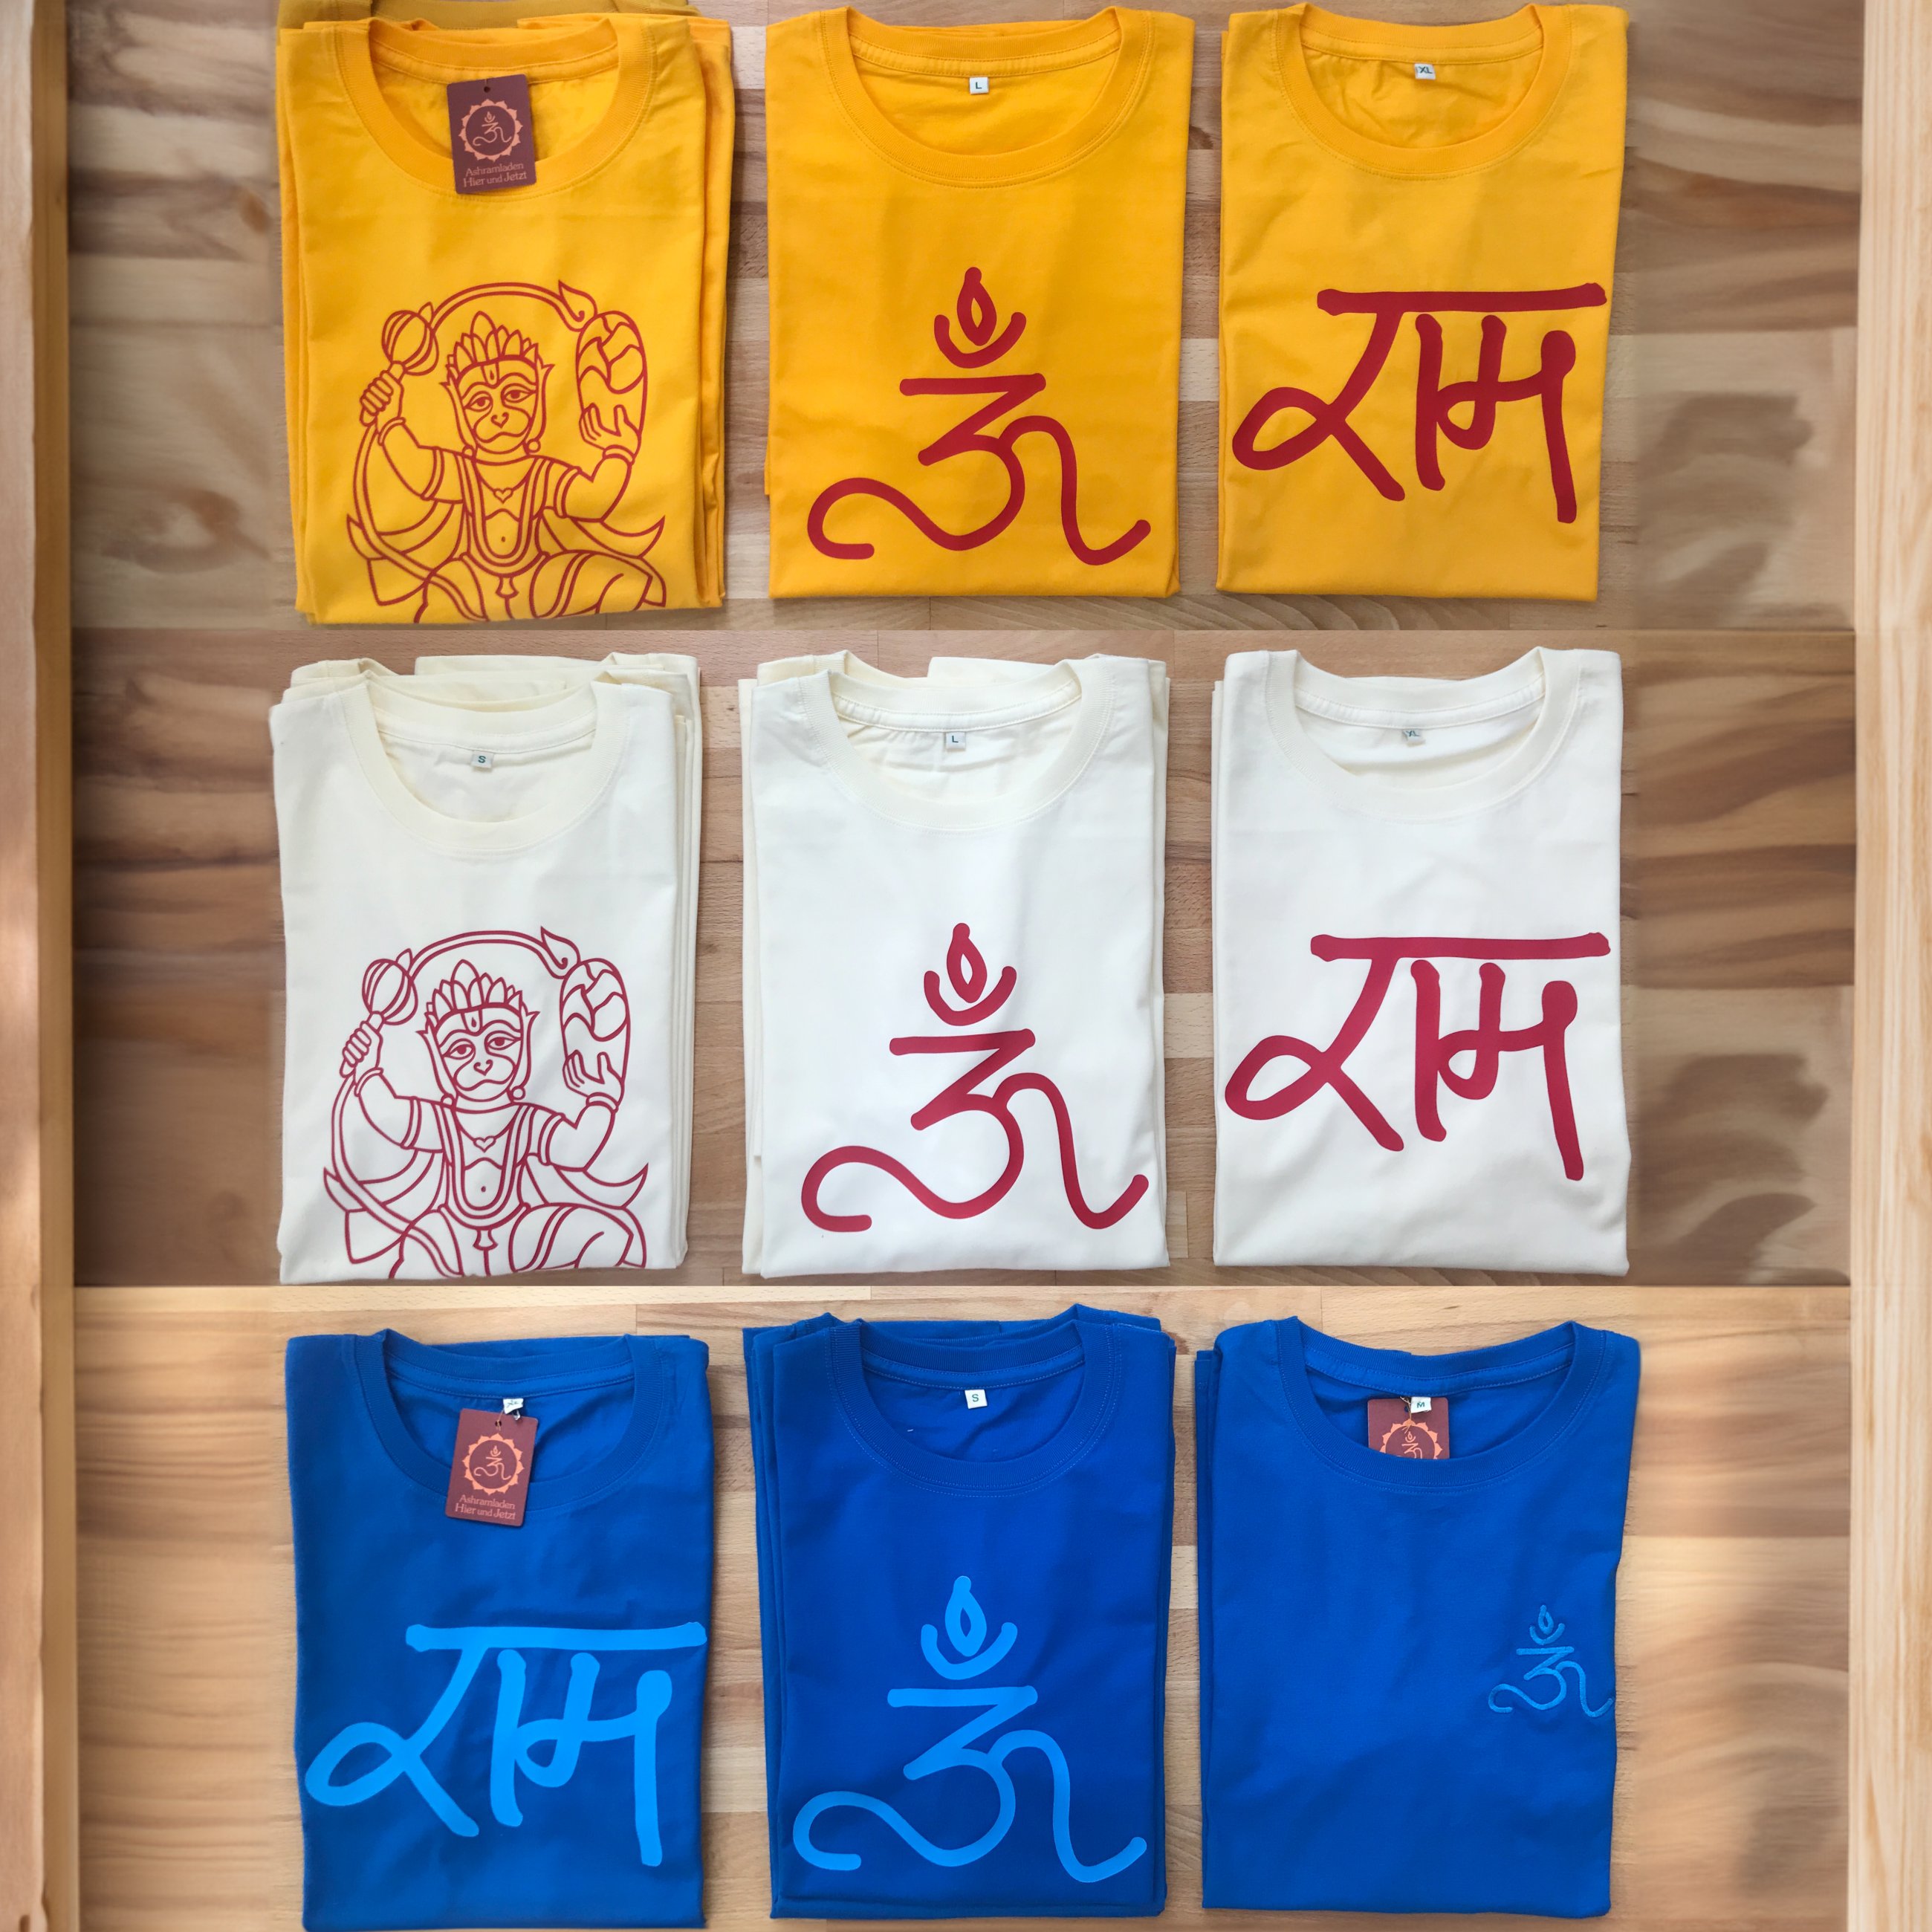 Mit Ma's Om und Ram sowie dem Hanuman des Ashram bedruckte T-Shirts